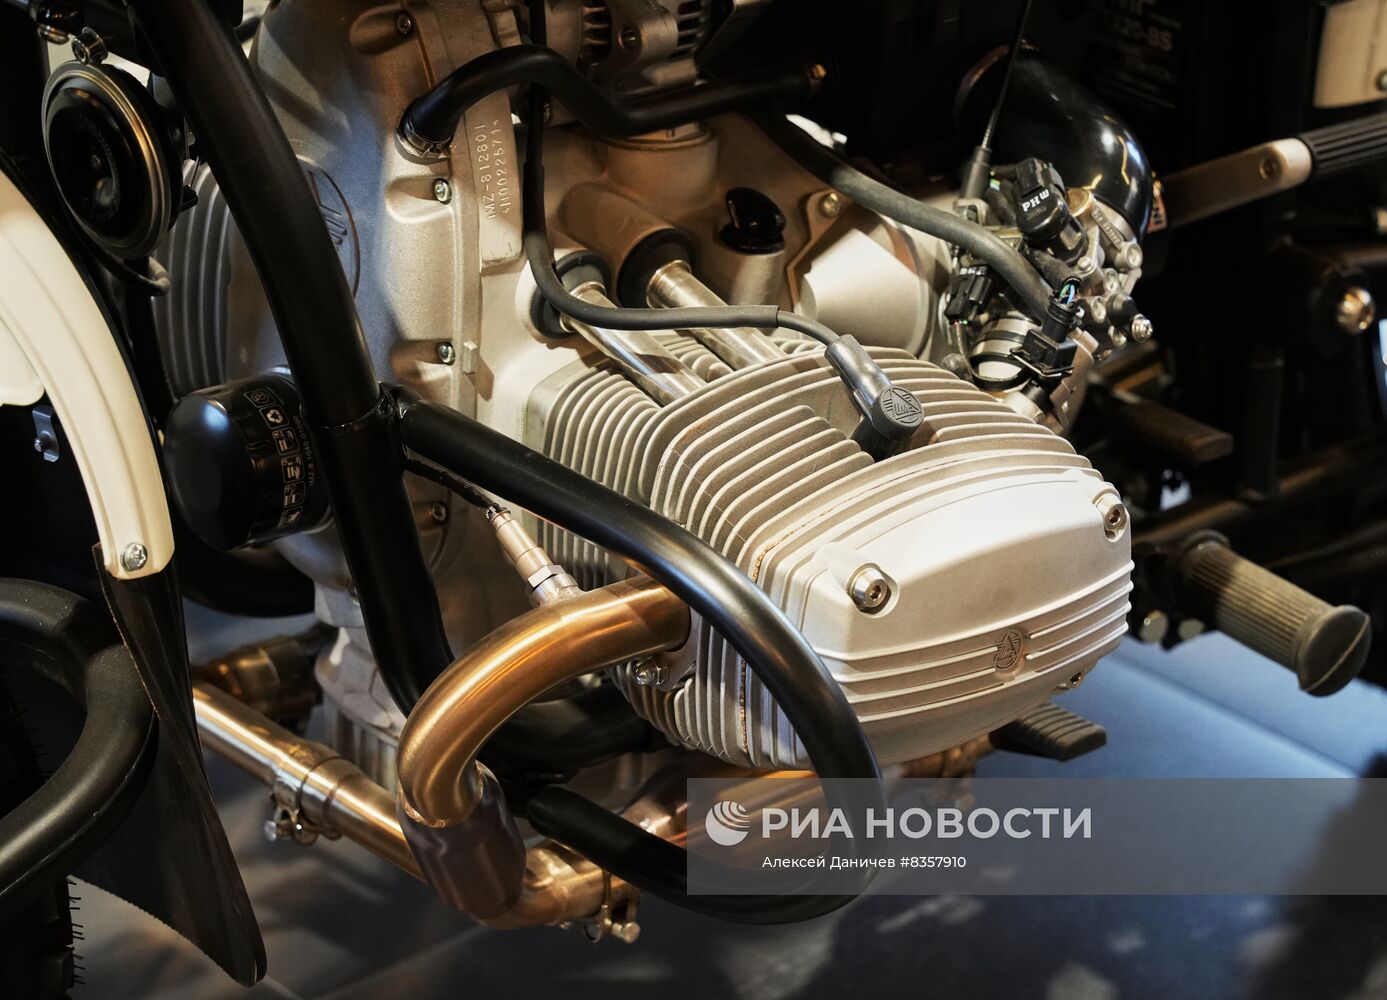 Продажа мотоциклов URAL Gear-Up в Петербурге